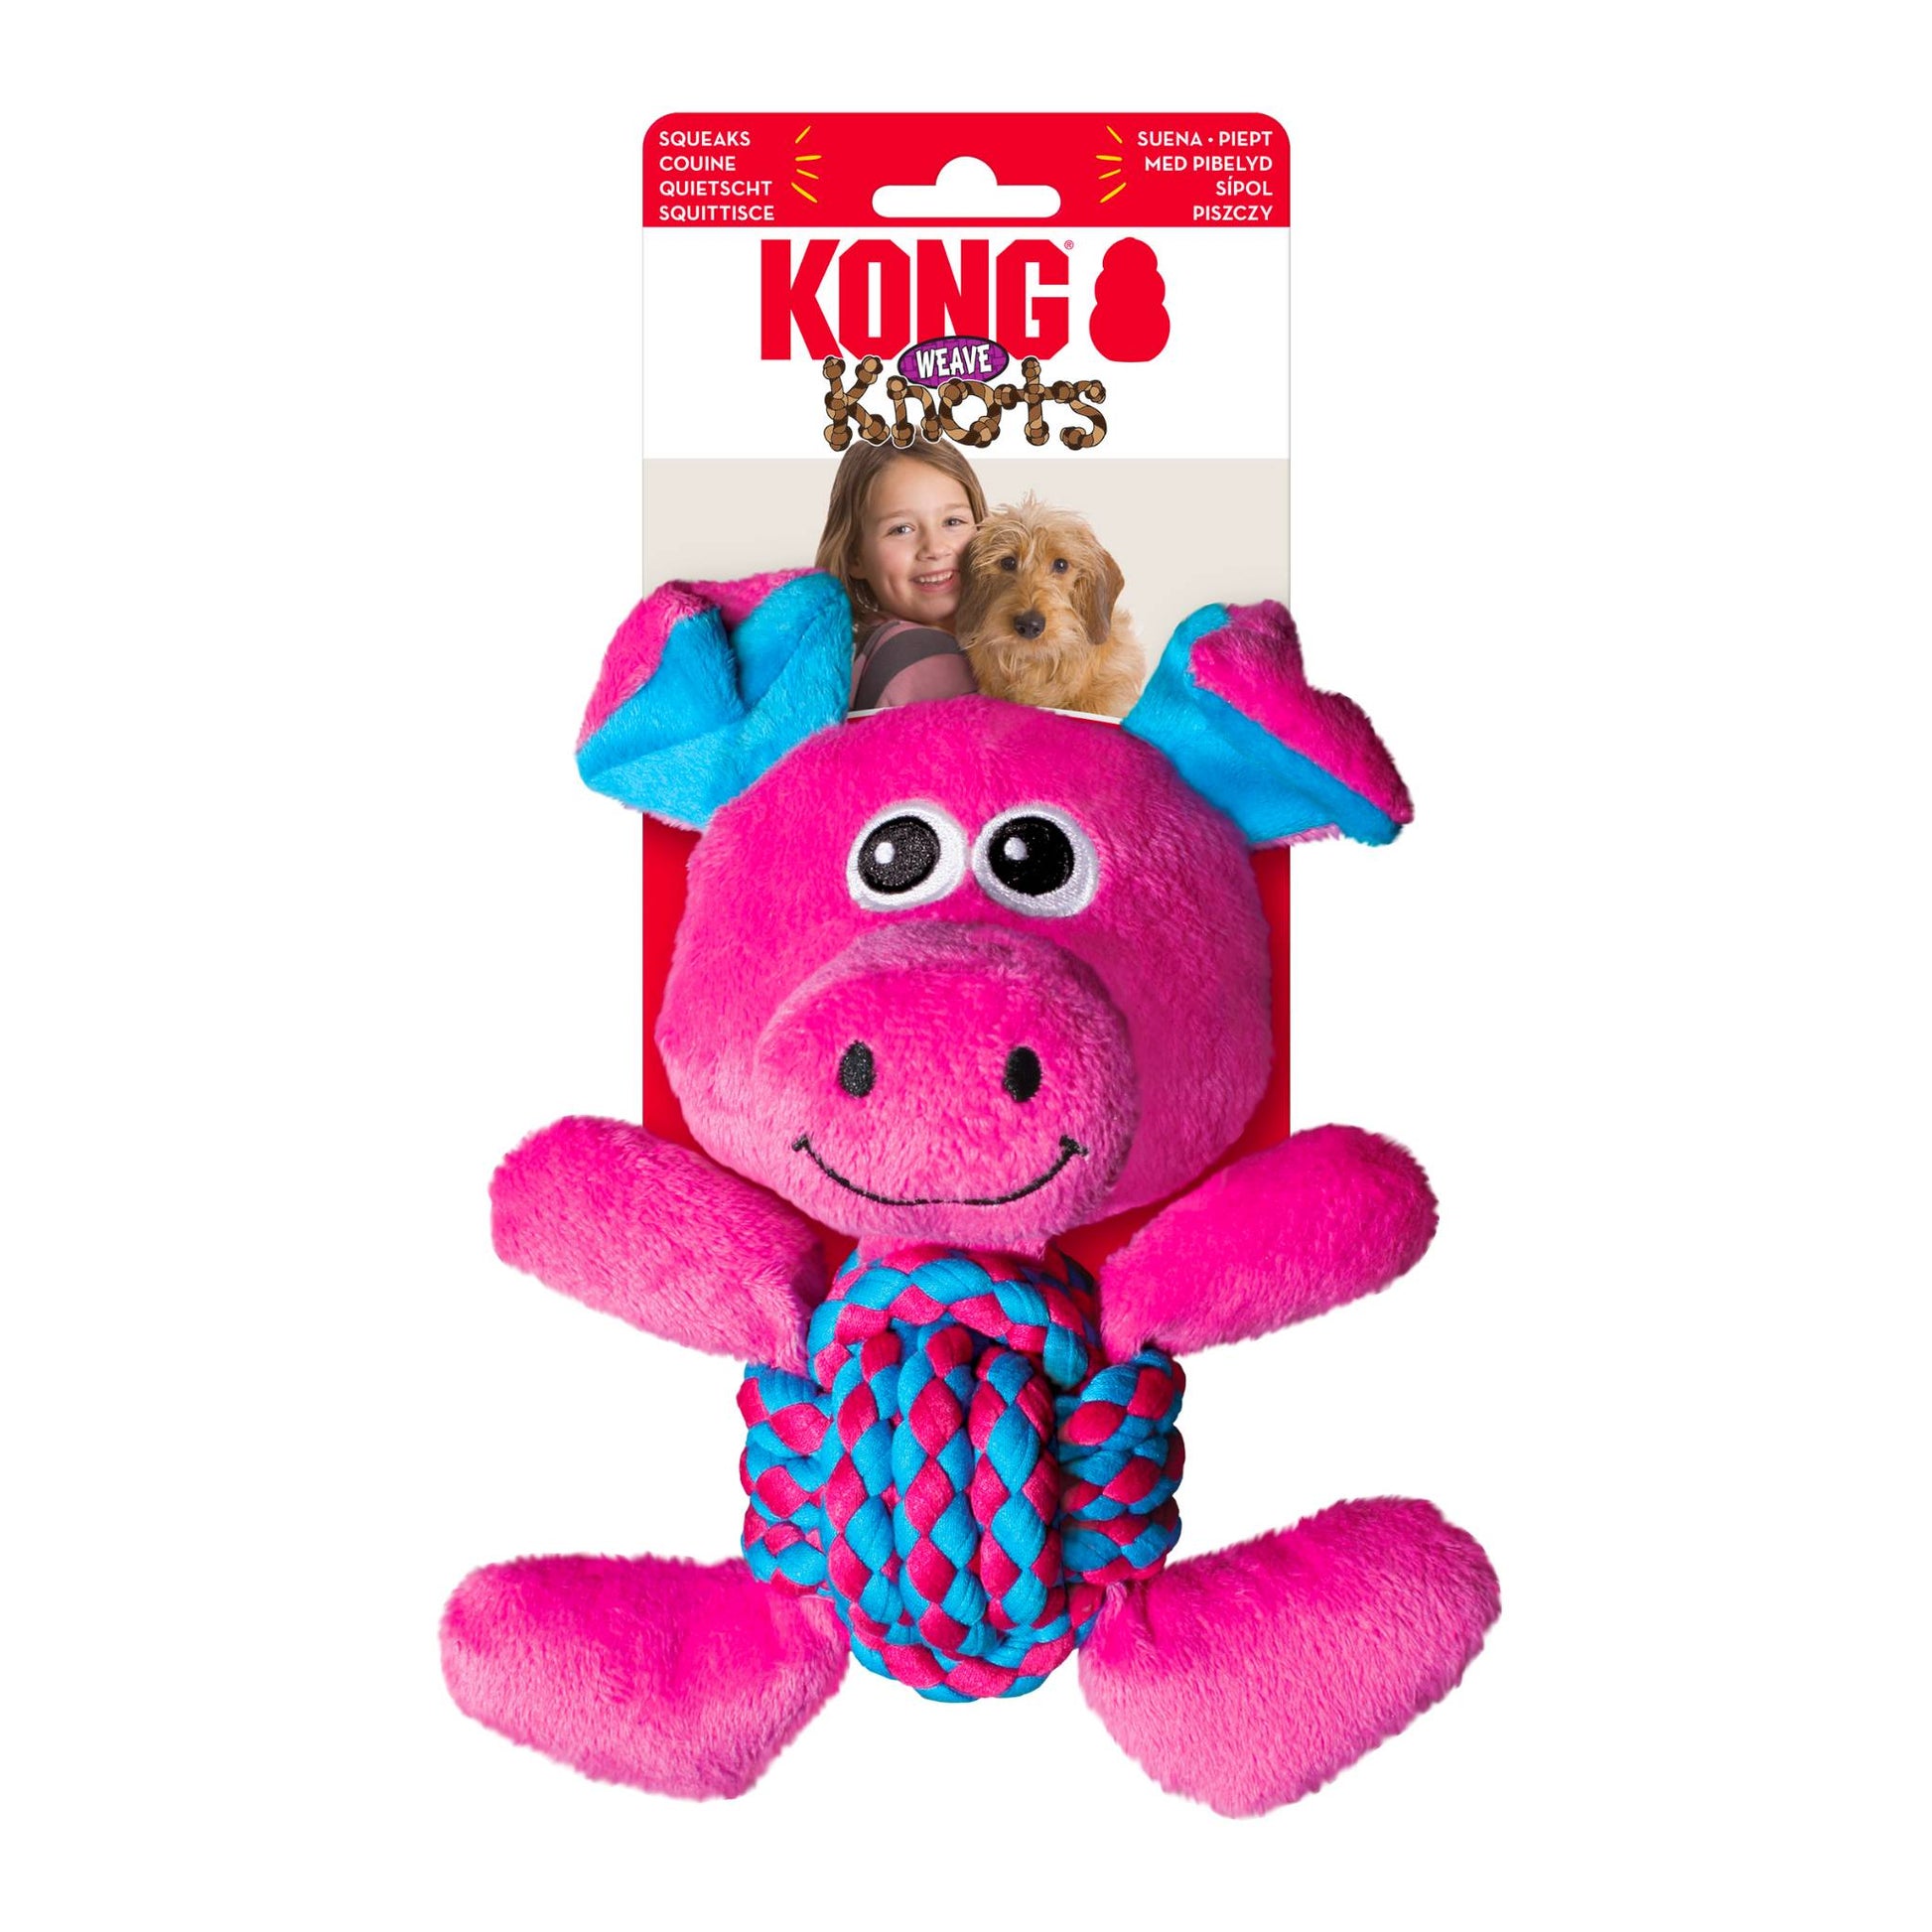 KONG pink soft pig